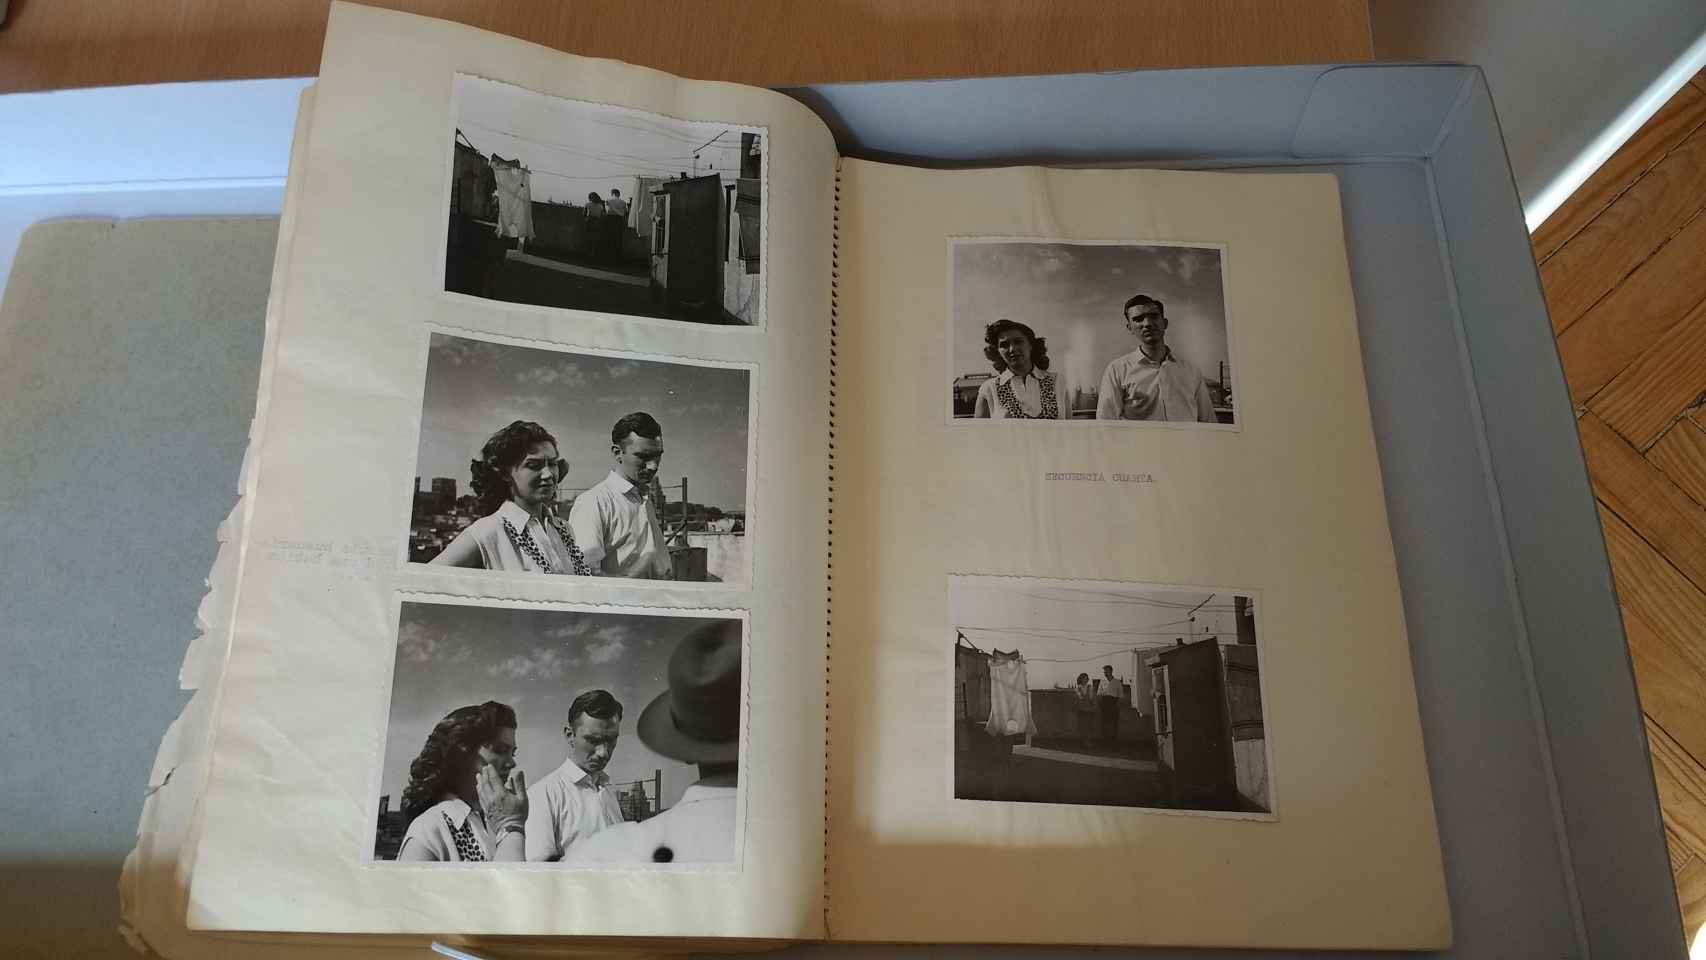 Fotografías del rodaje de Esa pareja feliz en el guion original de la script de la película.